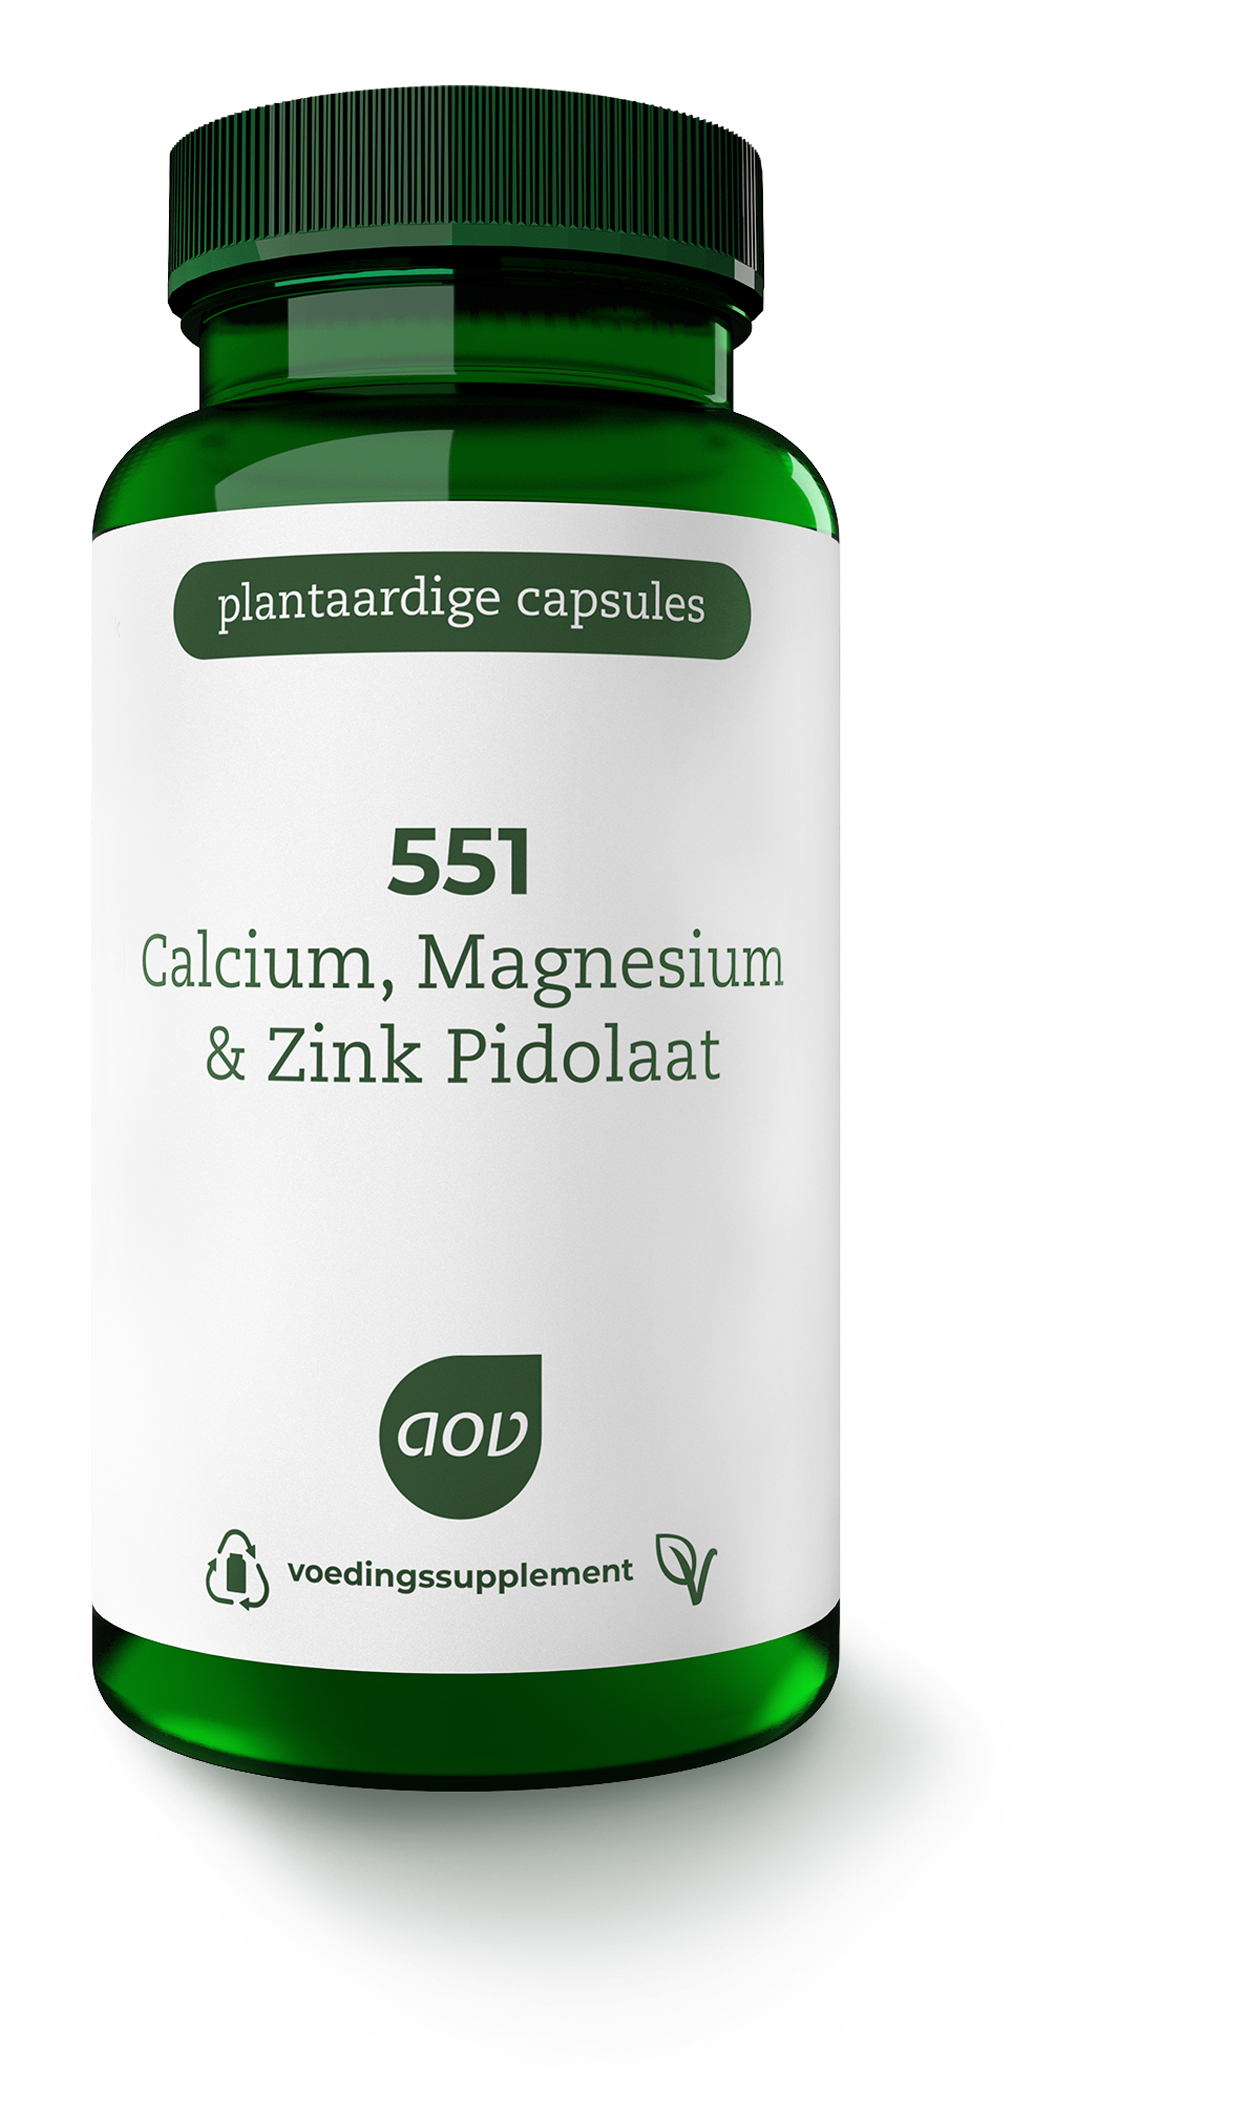 Calcium & Magnesium & Zink Pidolaat-90 VegCaps - 551